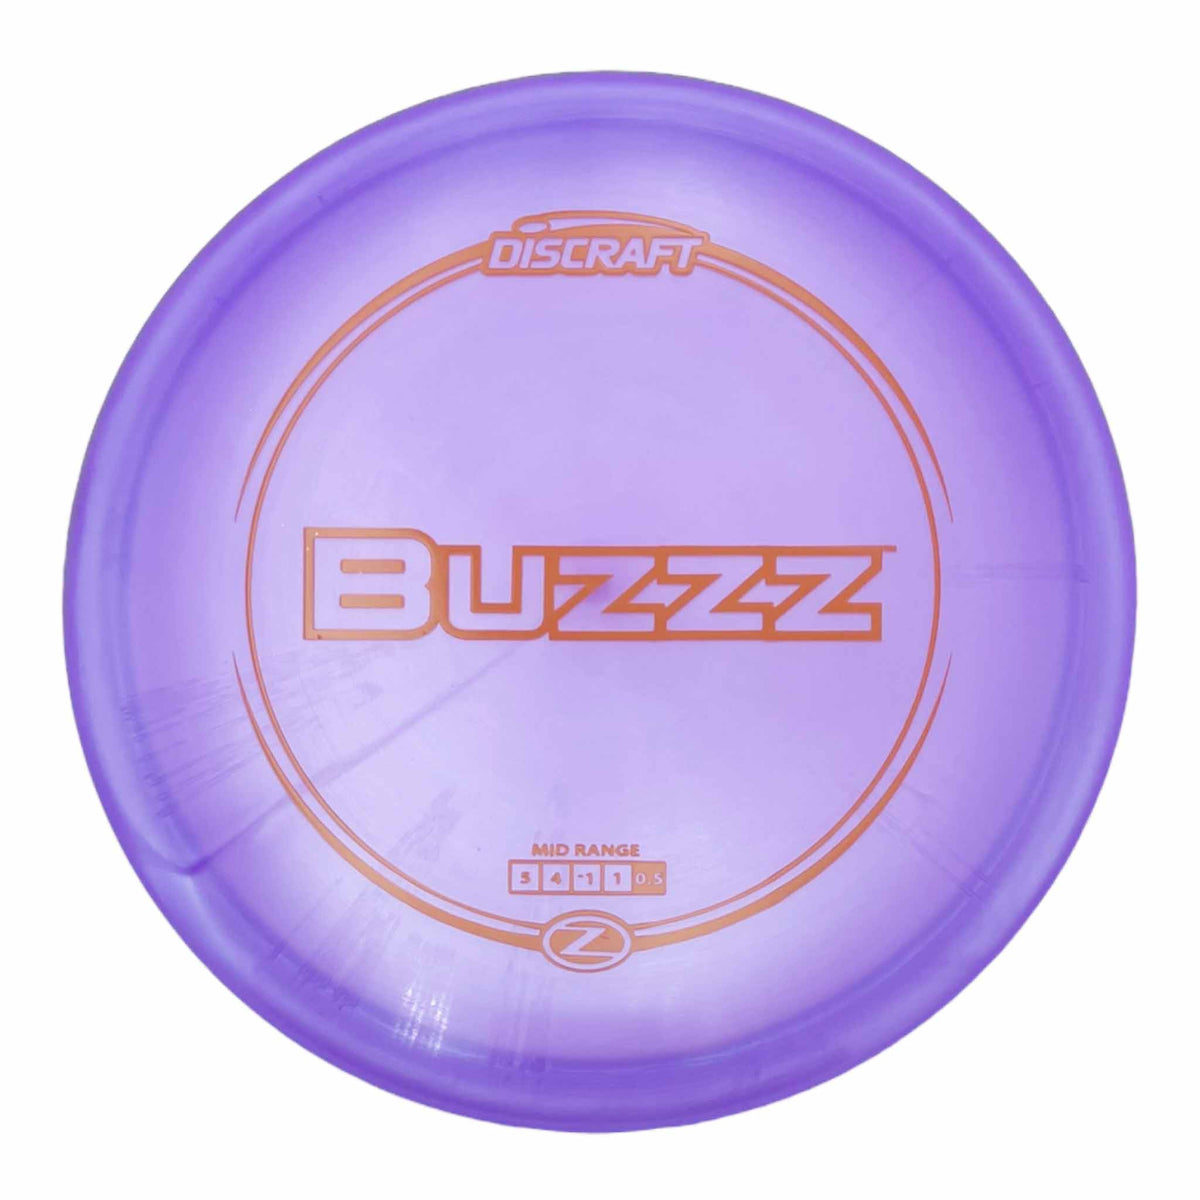 Discraft Z Line Buzzz midrange - Purple